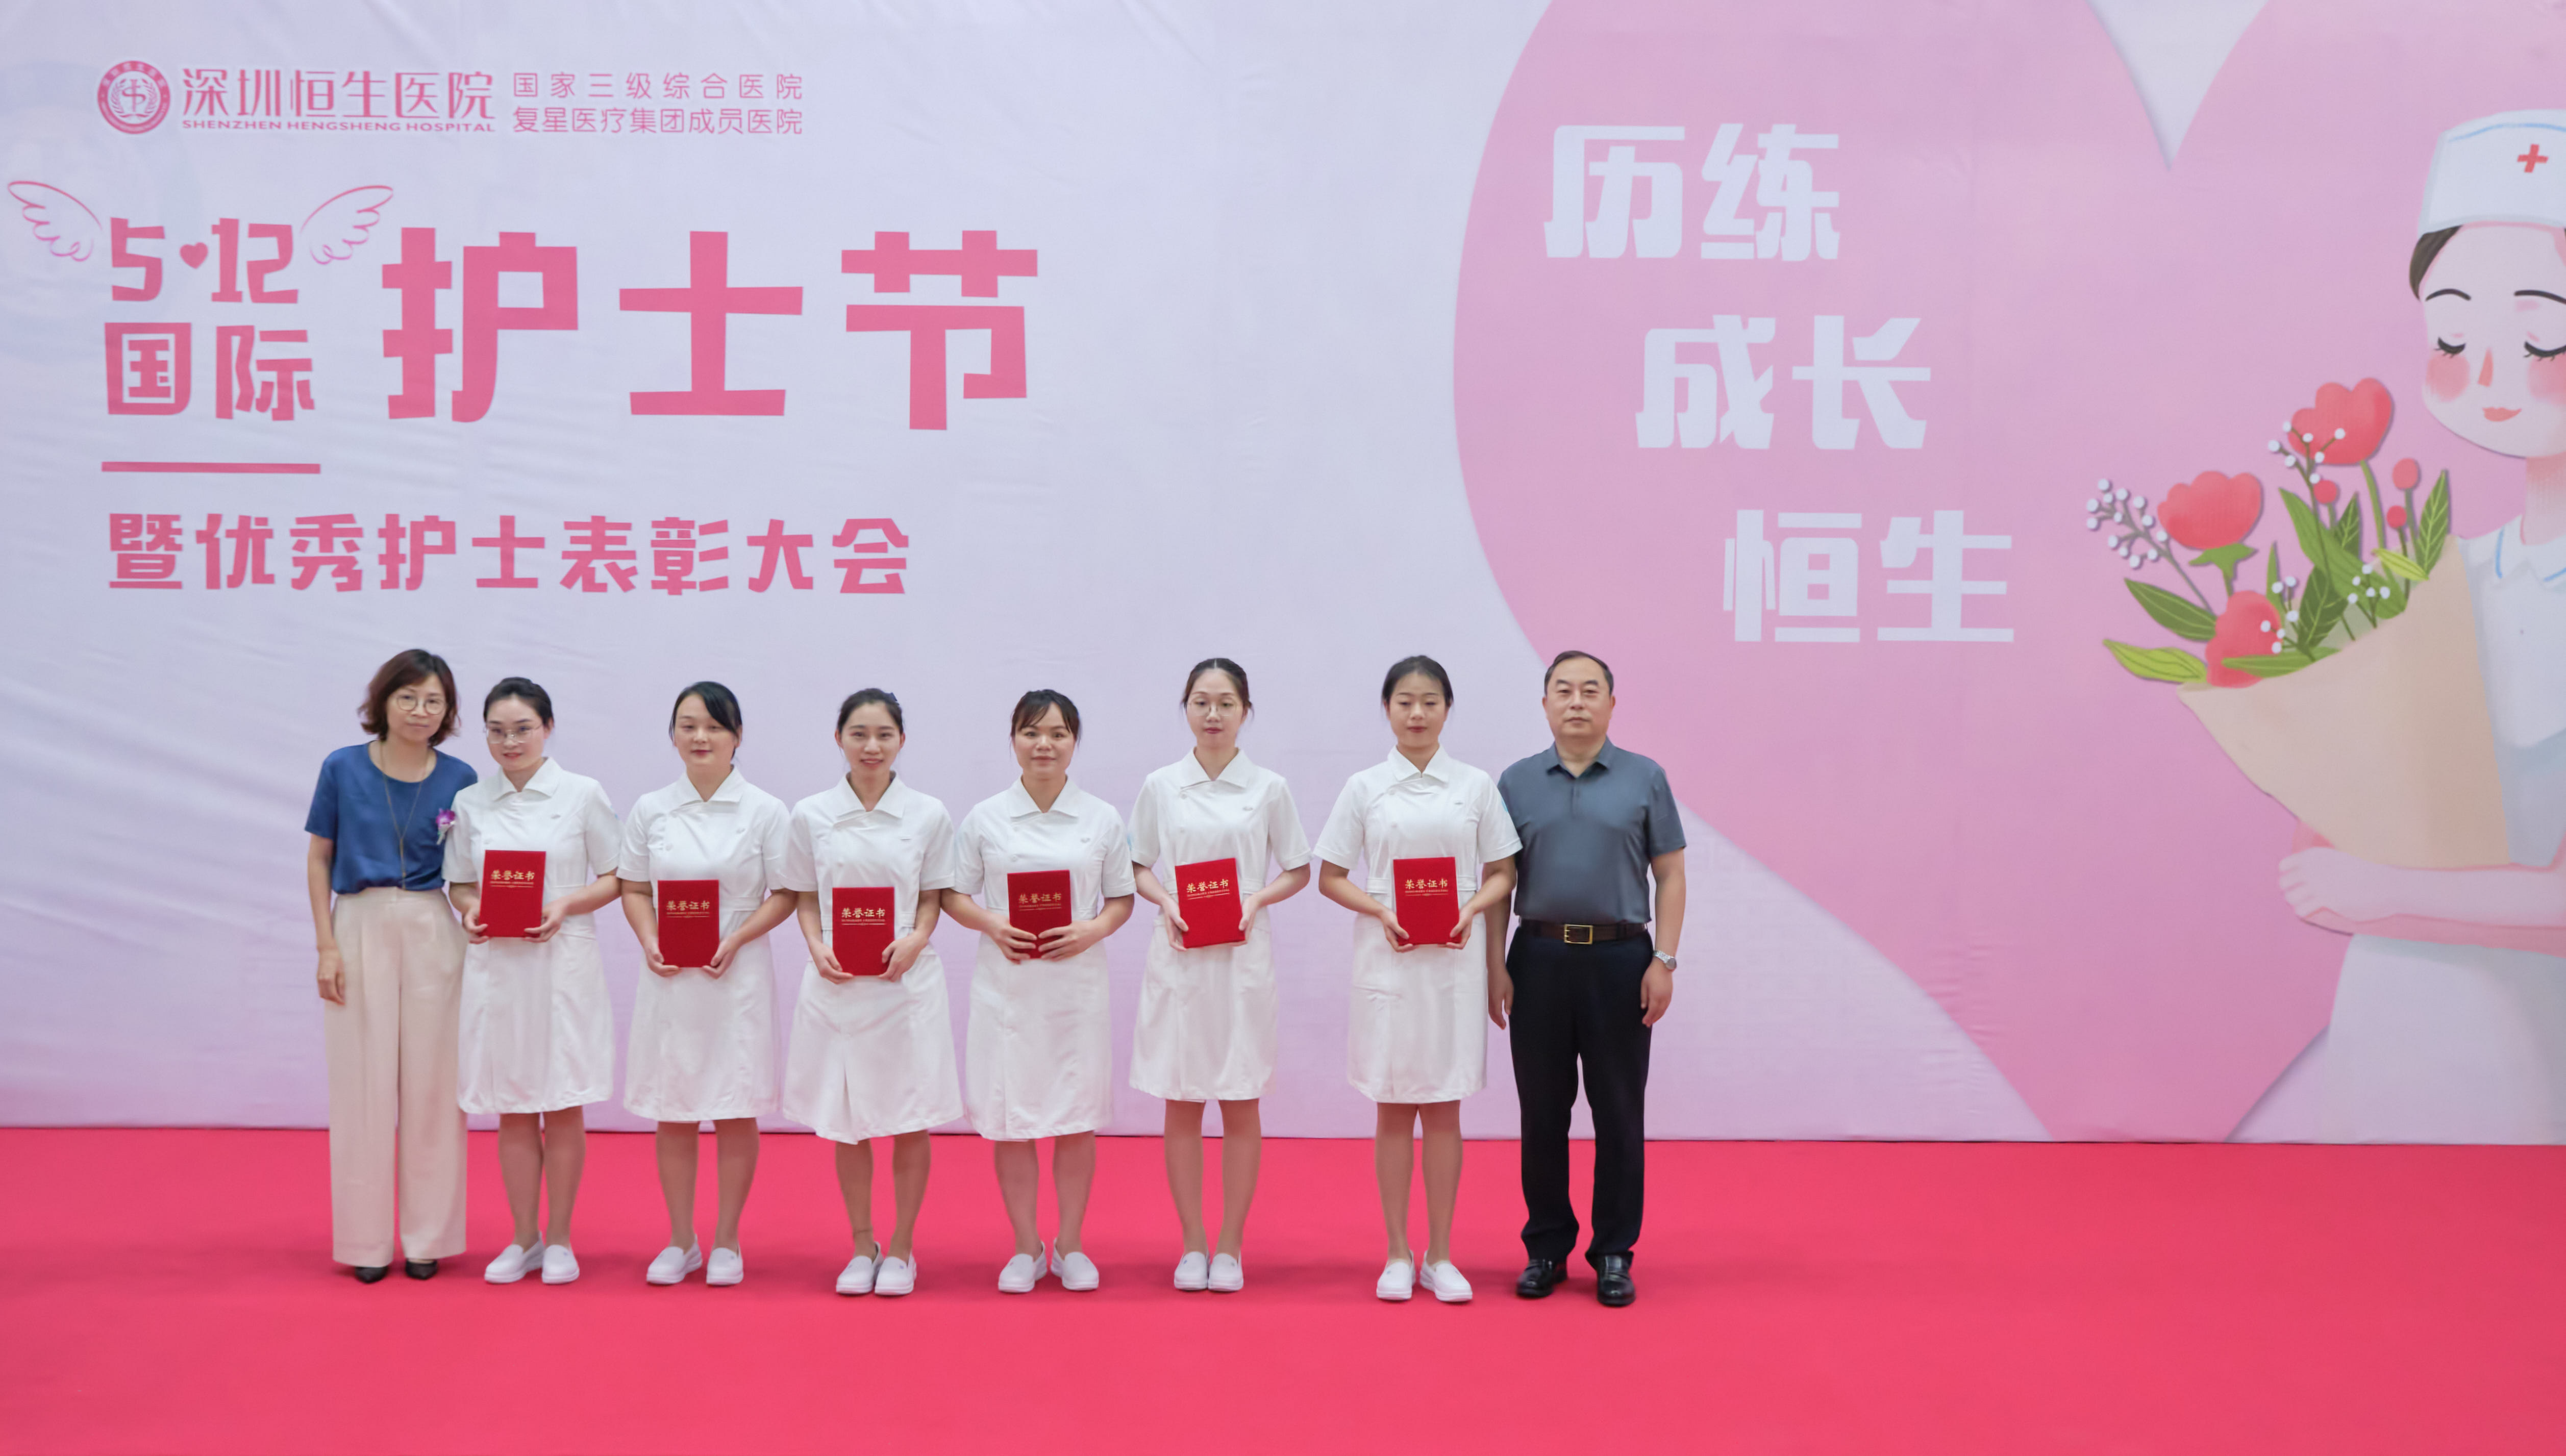 致敬最美天使 | 深圳恒生医院开展庆祝“5.12”国际护士节系列活动